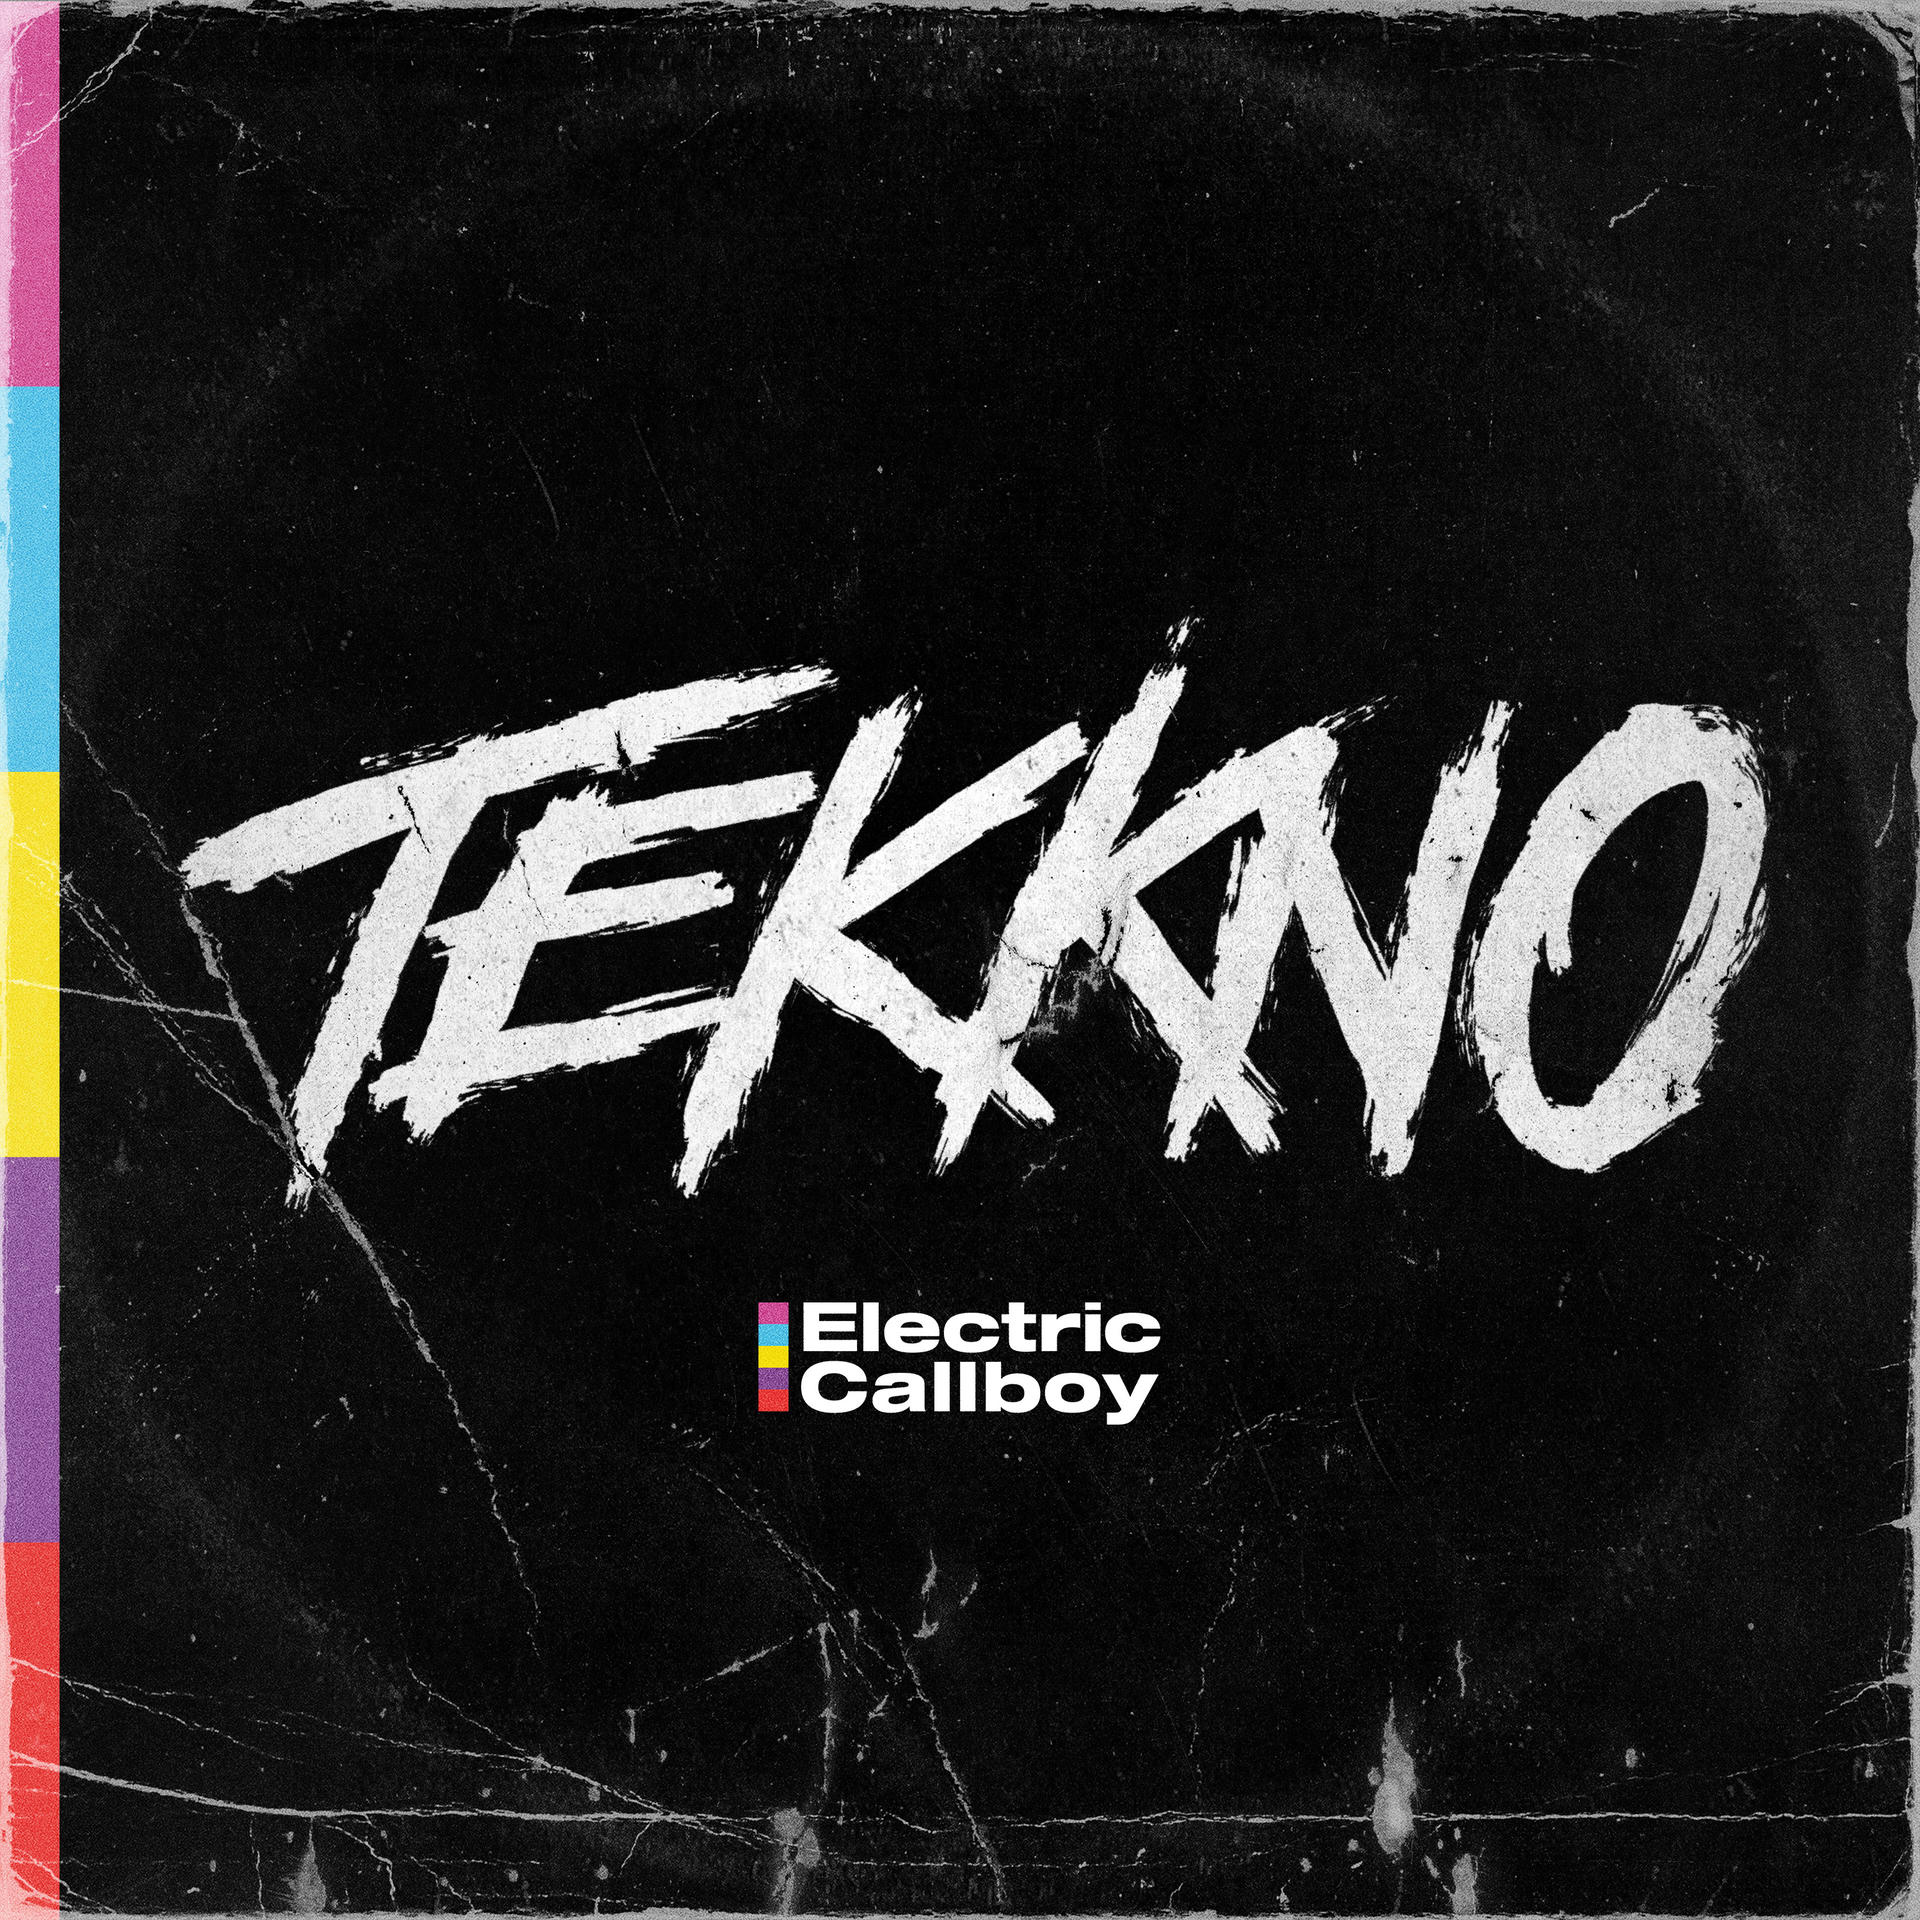 Electric Callboy - Tekkno Bonus-CD) + (LP 